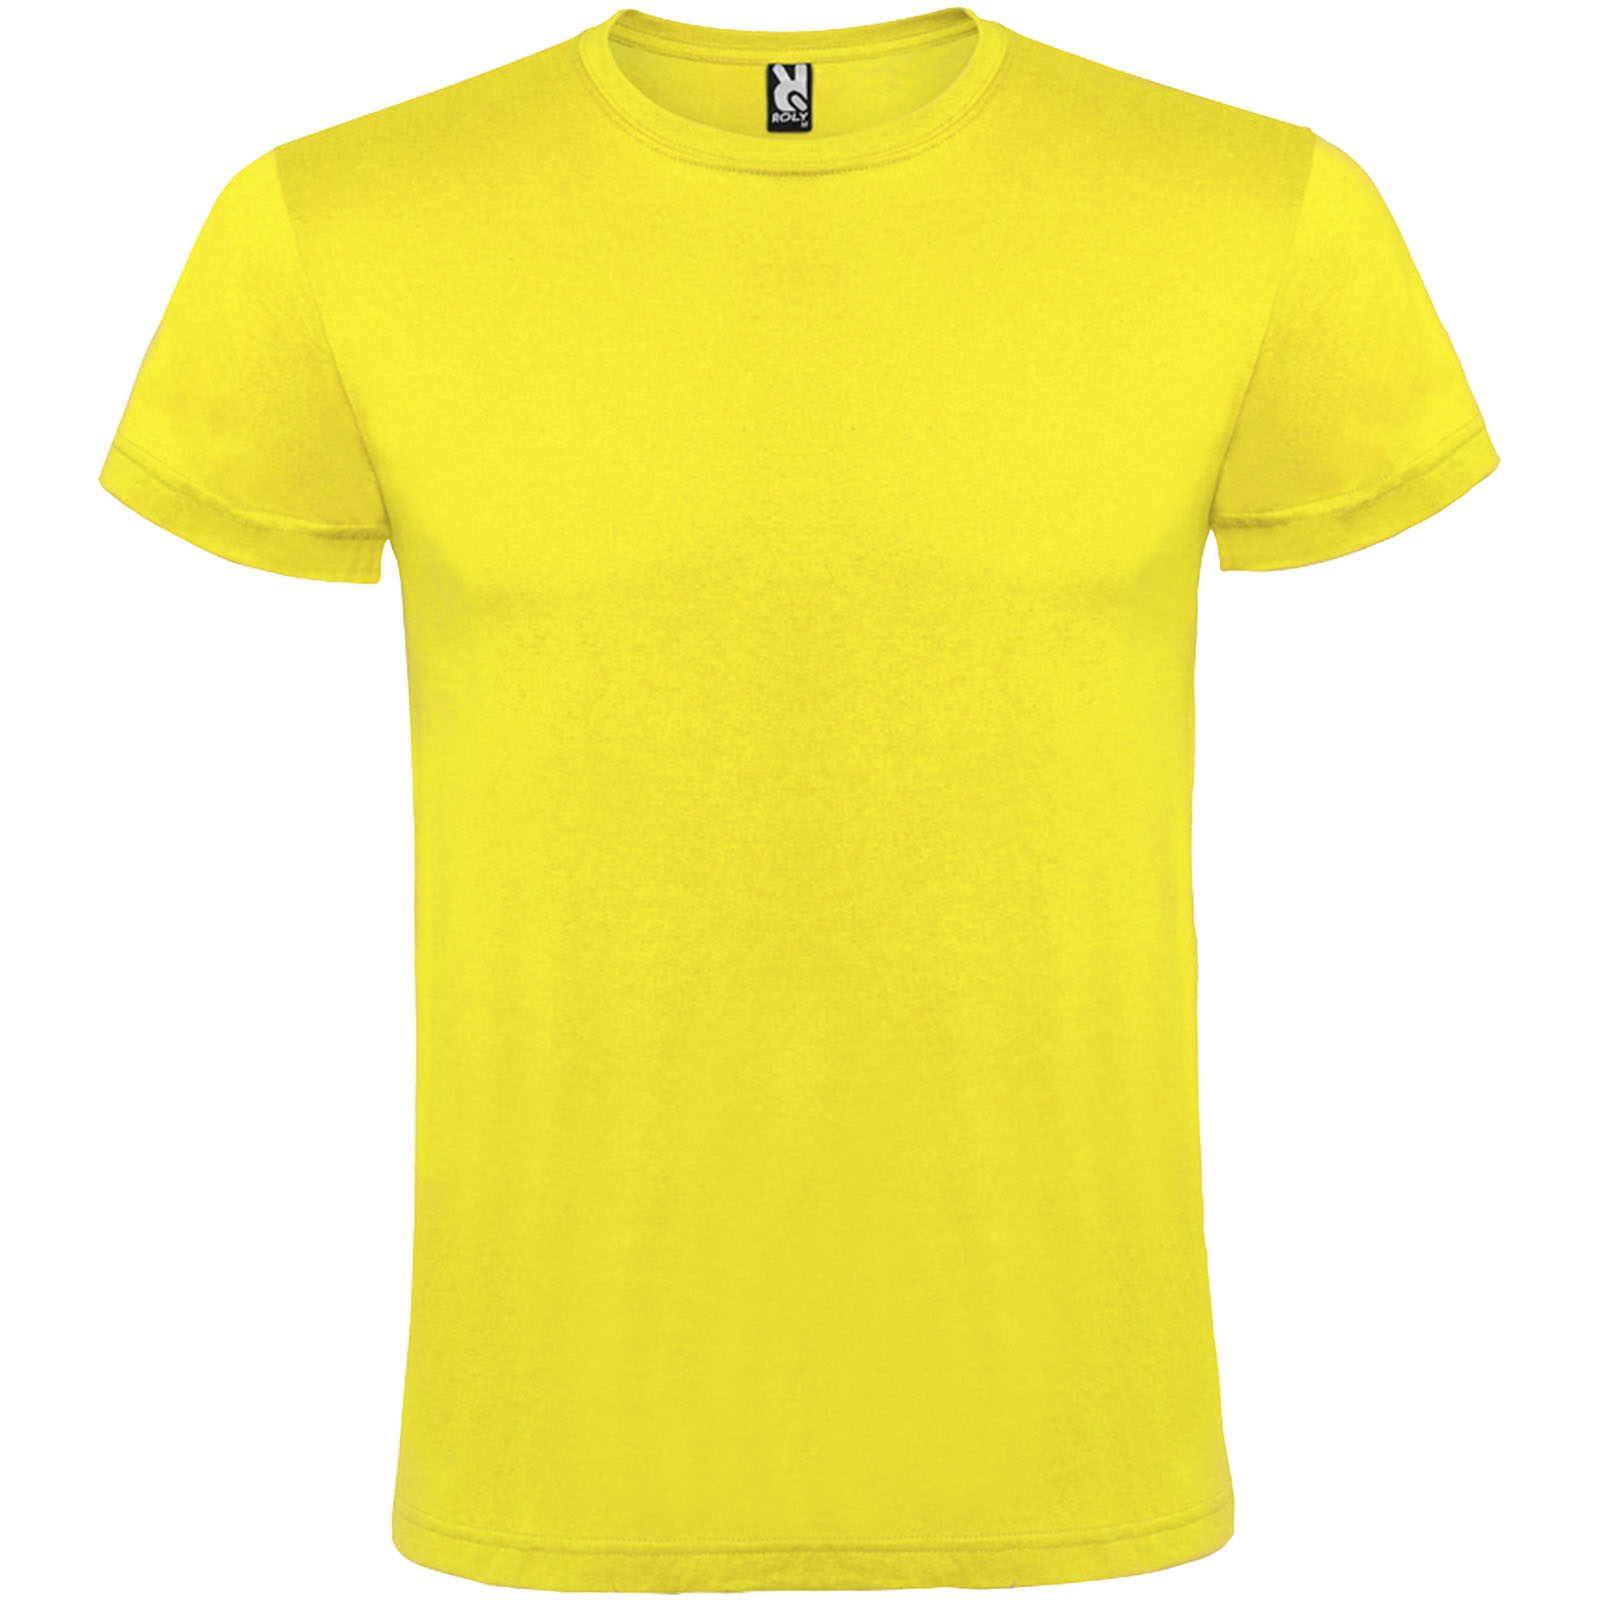 Atomic short sleeve unisex t-shirt - Castle Hedingham